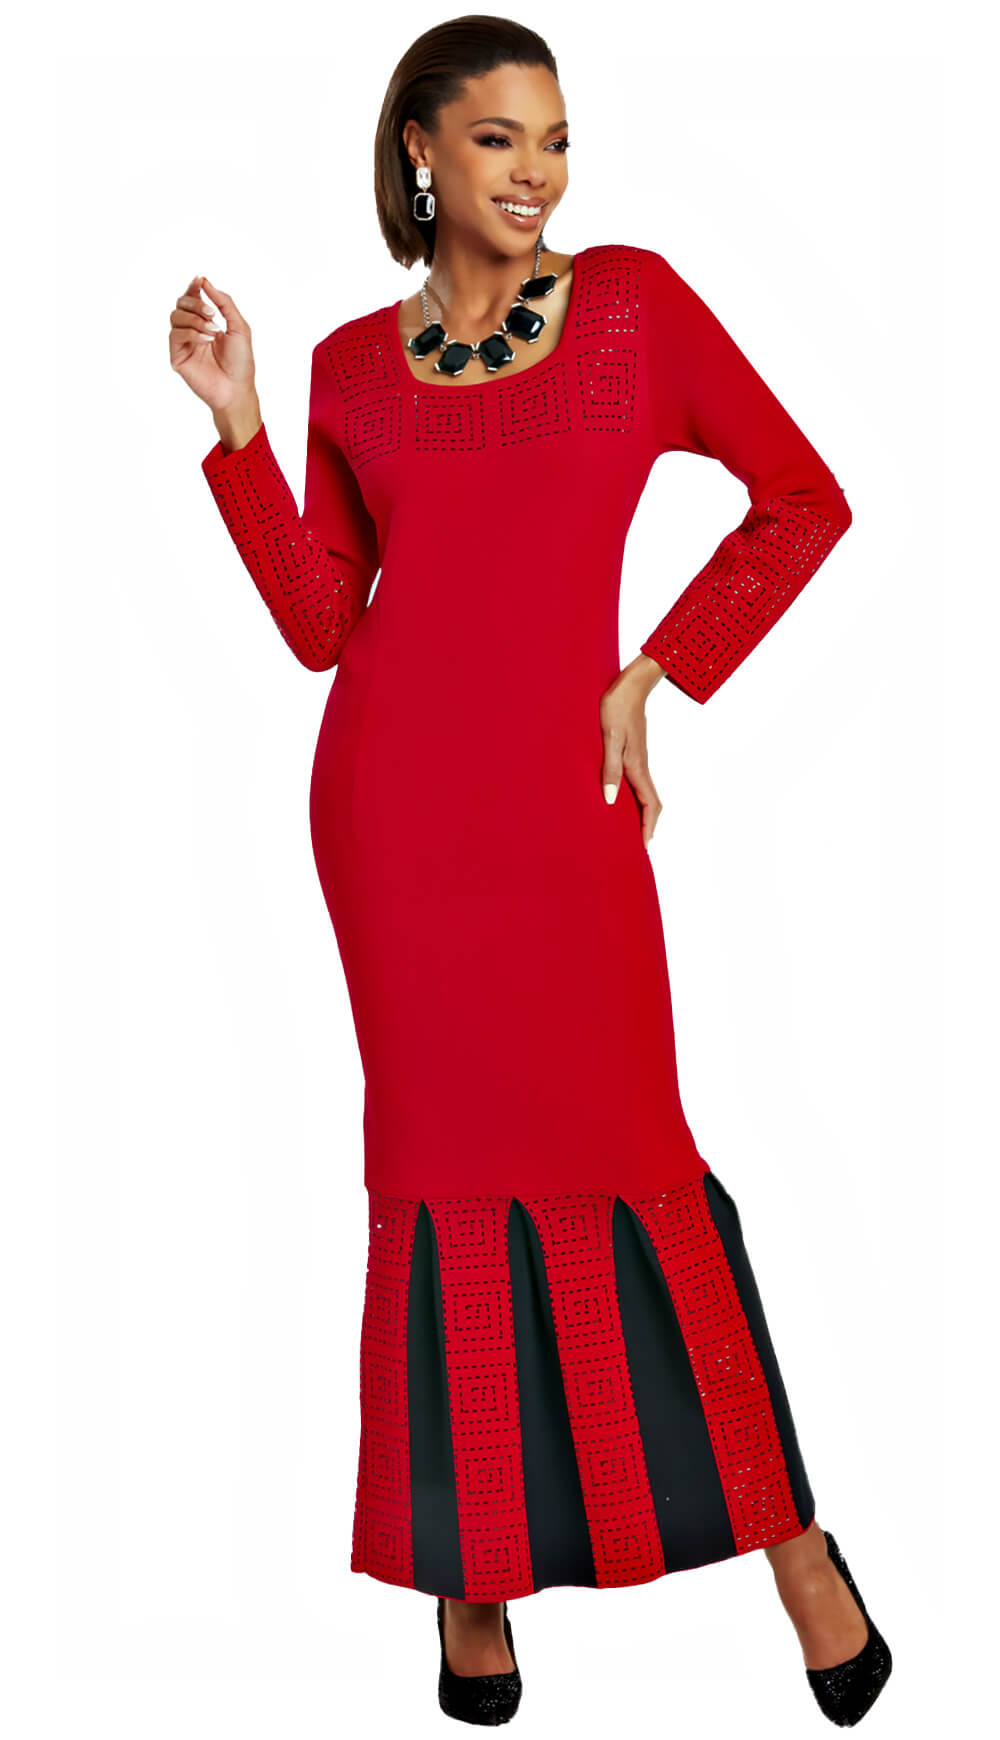 Donna Vinci Knit 13386 - Church Suits For Less